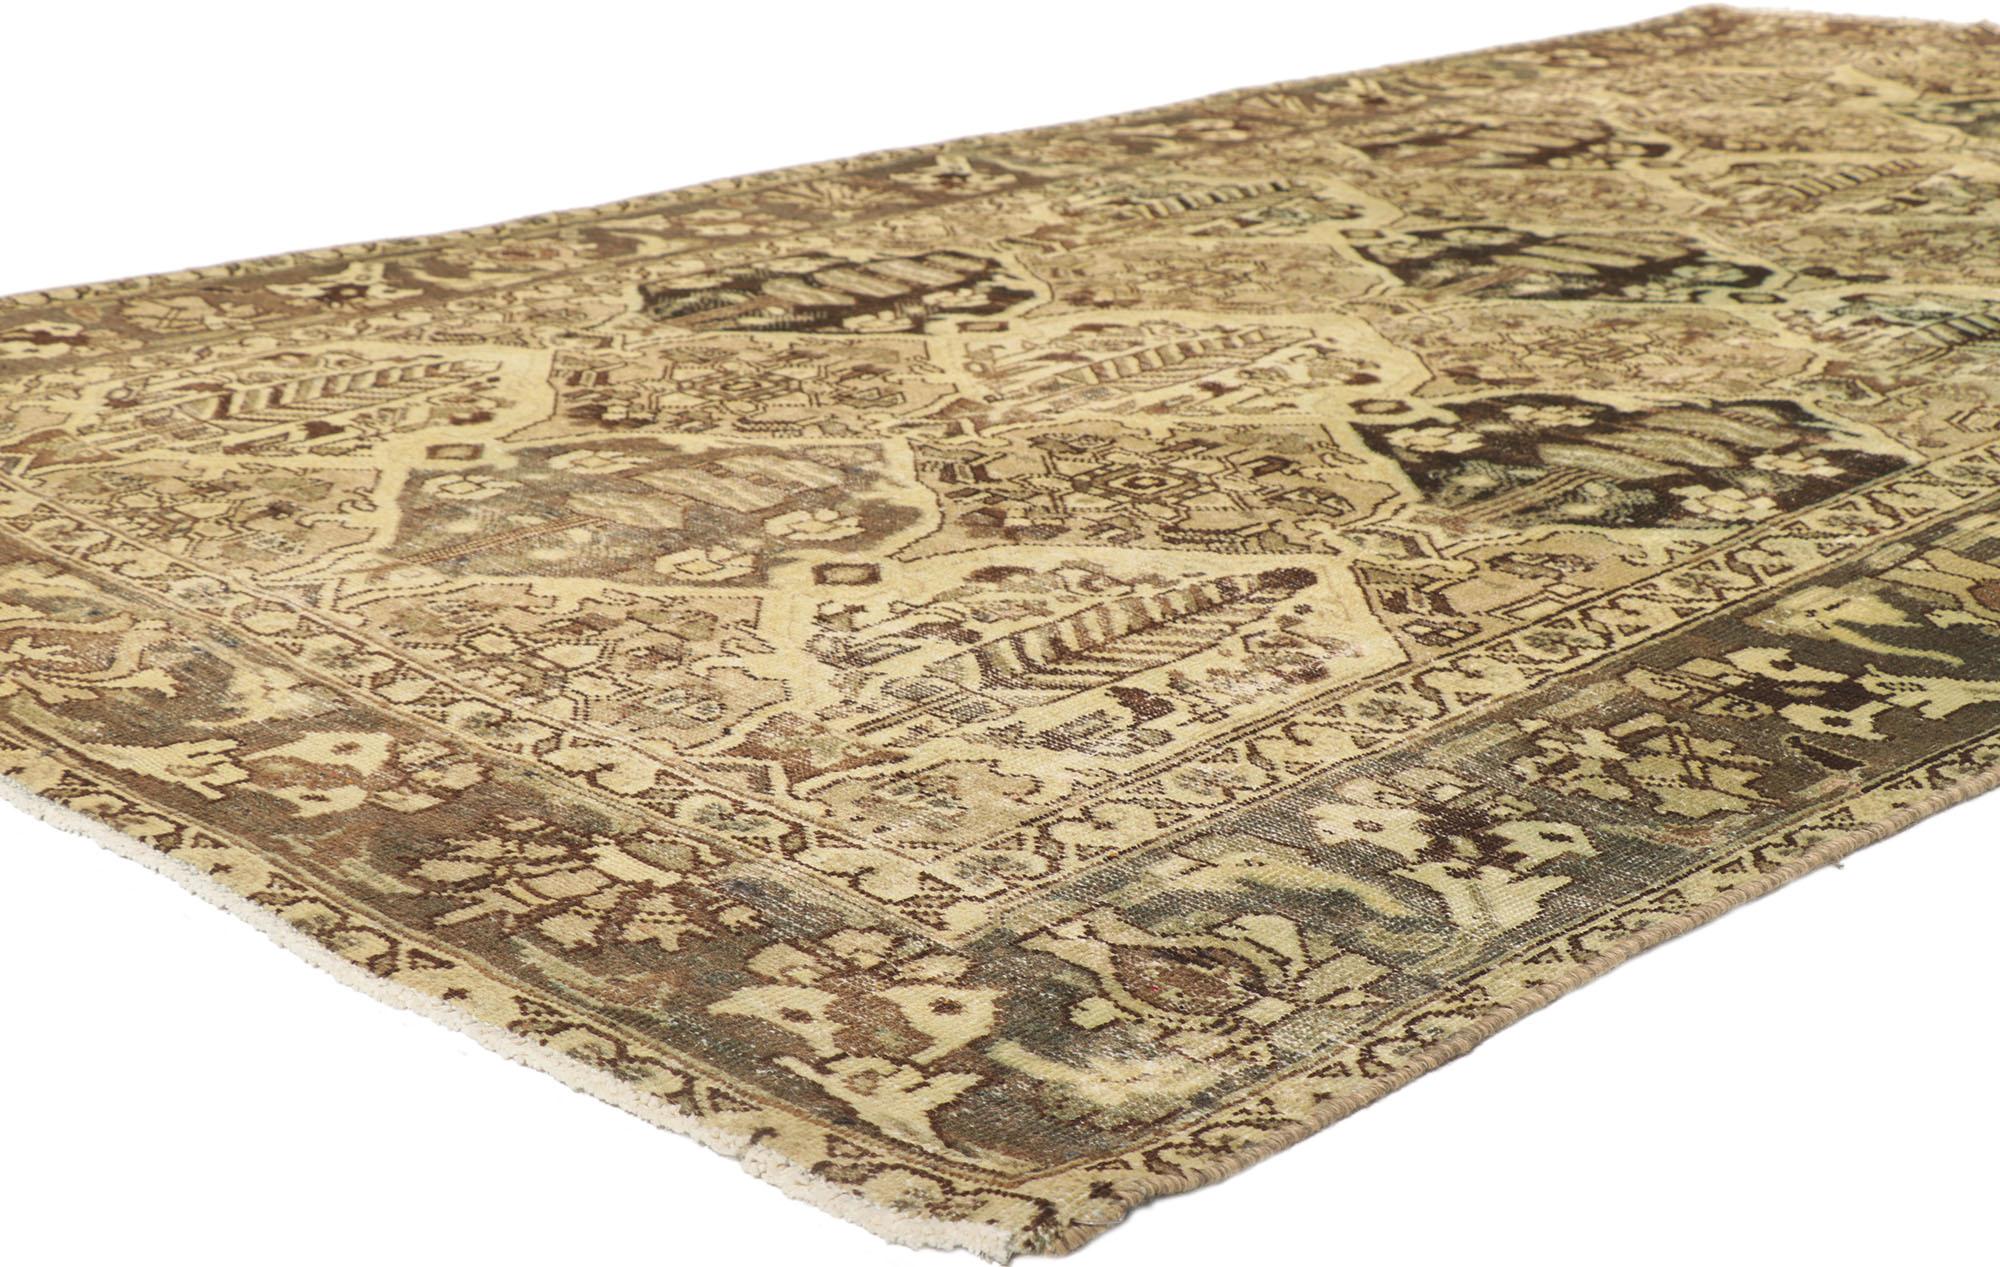 53751 Distressed Vintage Persian Bakhtiari Teppich mit Garten Design 06'00 x 10'10. Mit seiner rustikalen Sensibilität und dem zeitlosen botanischen Muster verleiht dieser handgeknüpfte, antike persische Bakhtiari-Teppich aus Wolle einen kuratierten